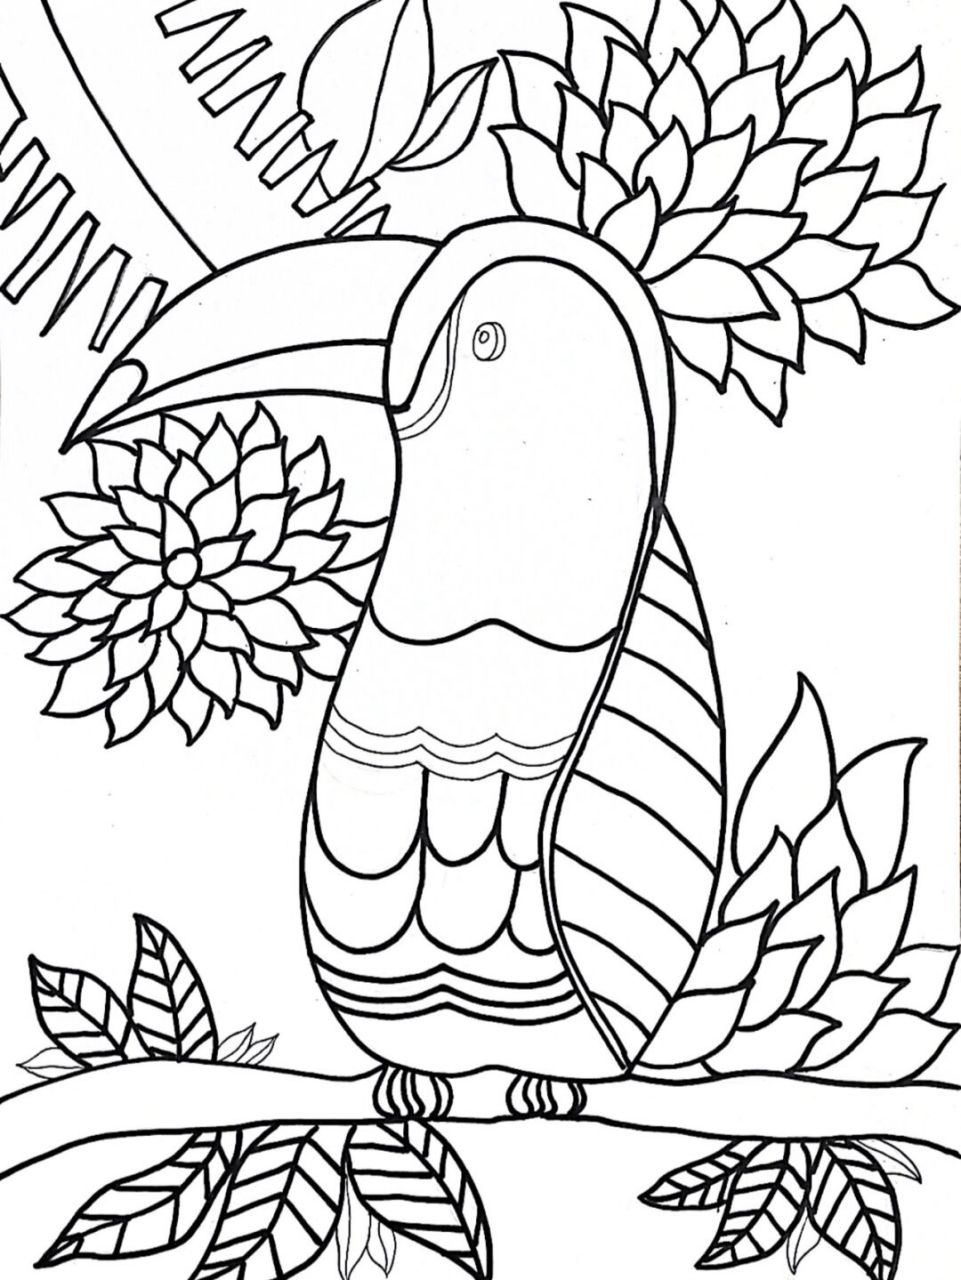 鹦鹉黑白线描画图片